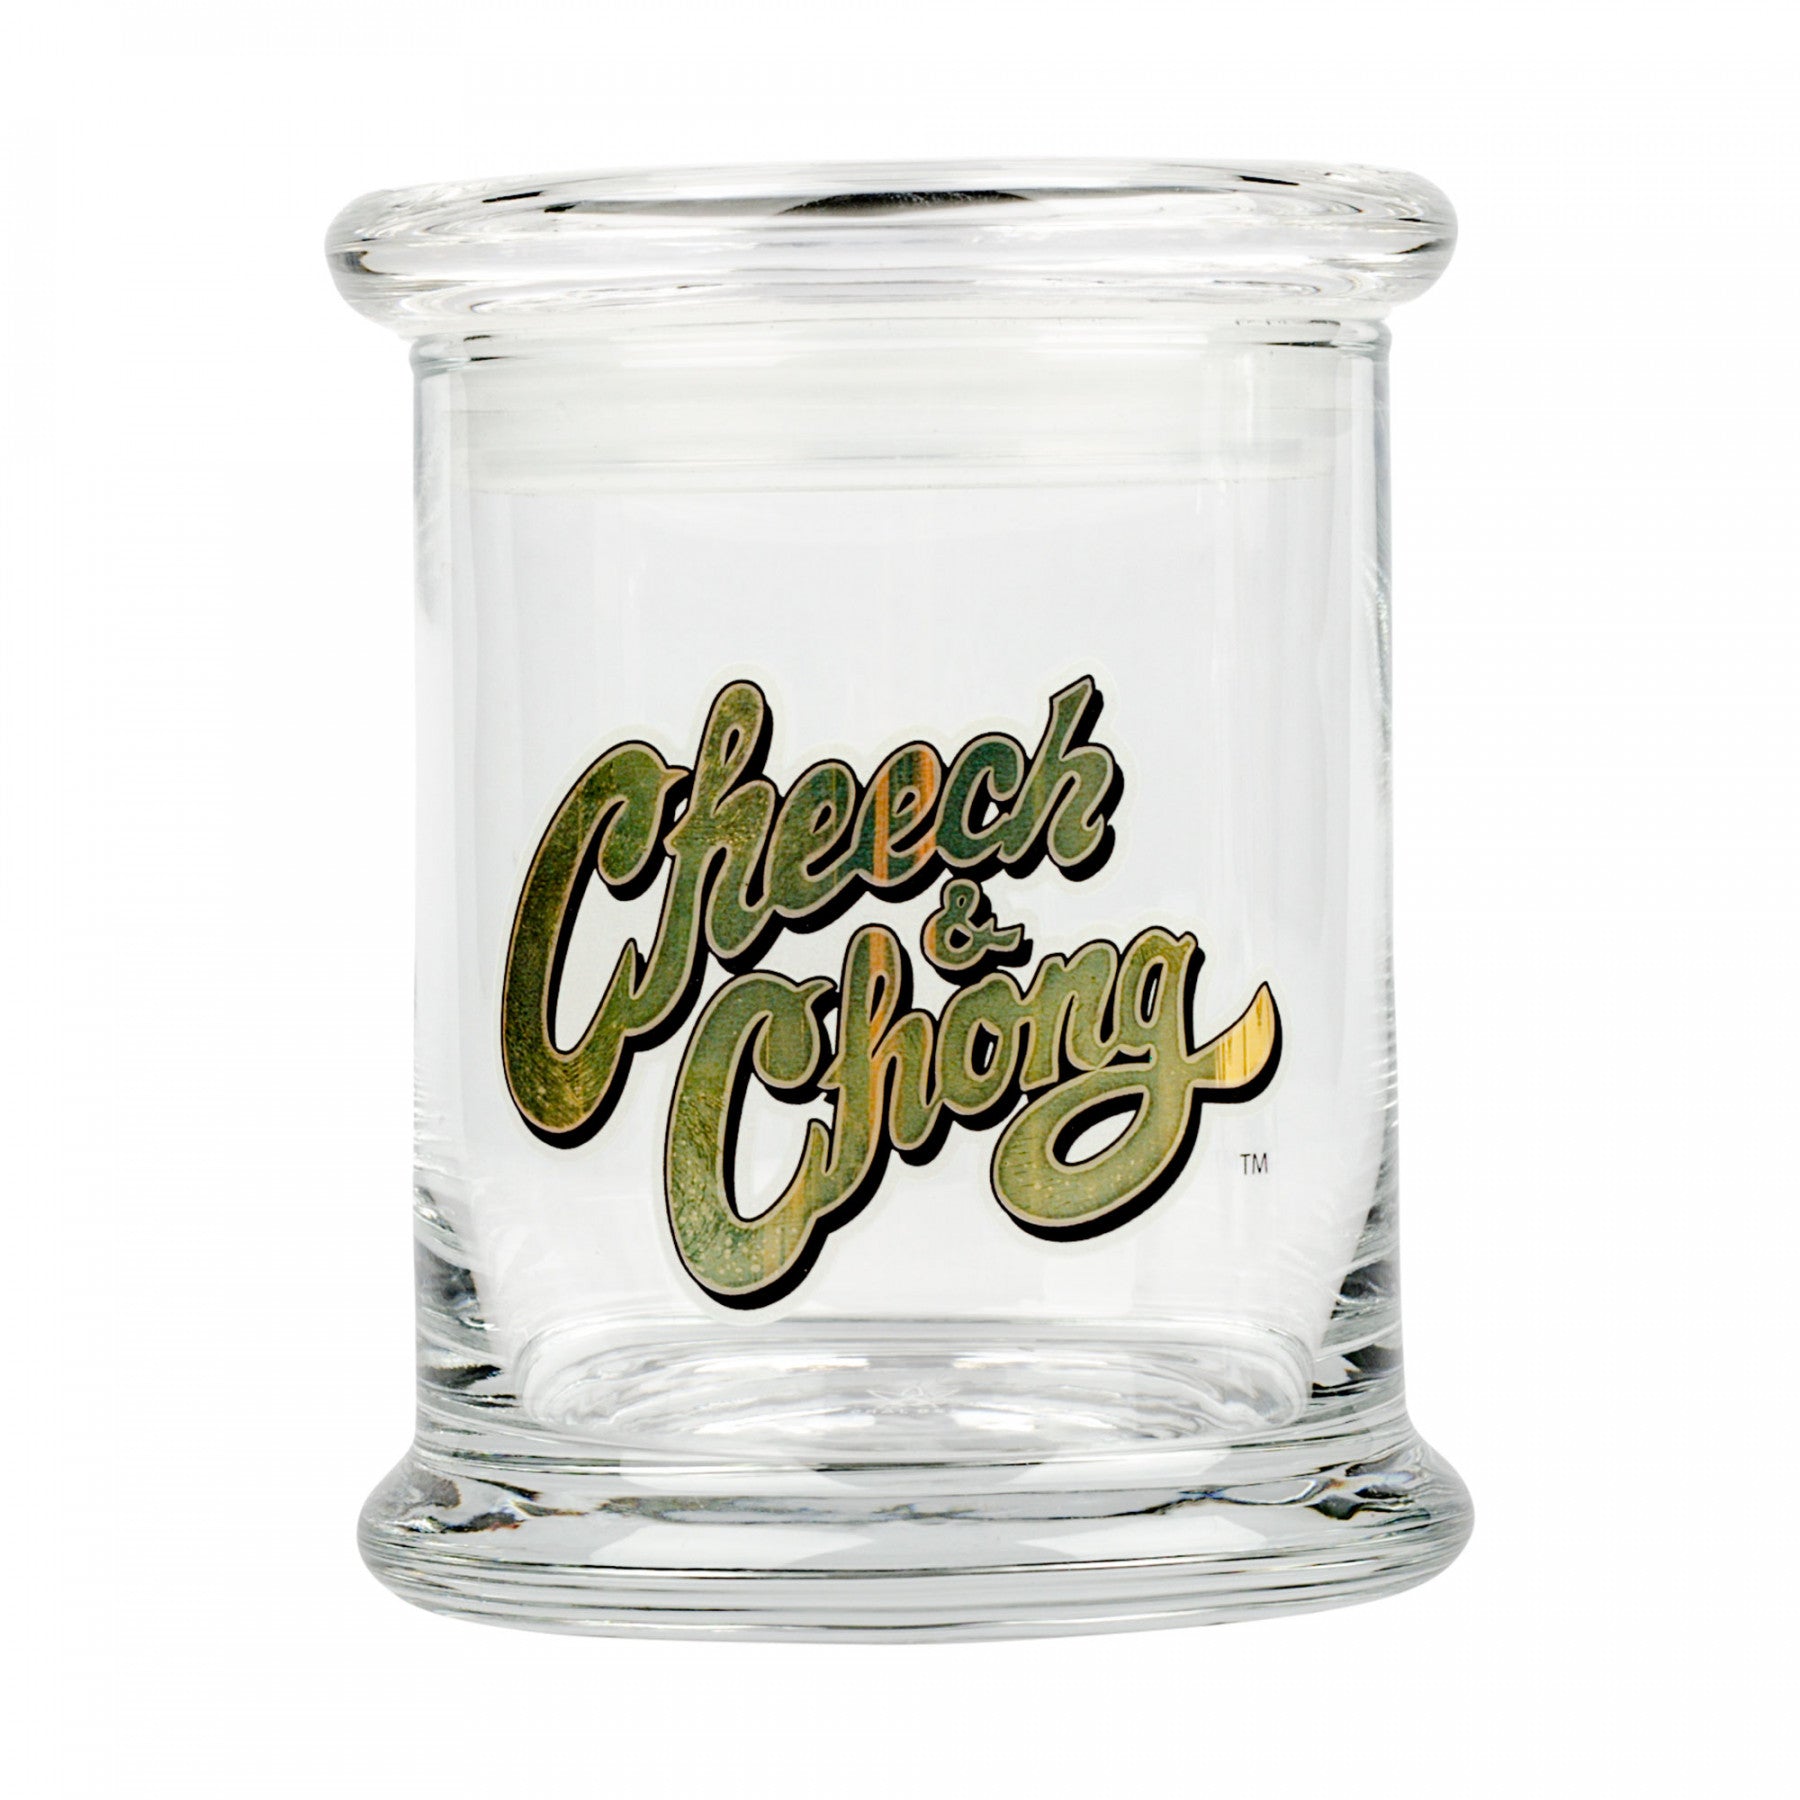 Cheech and Chong Pop Top Jar